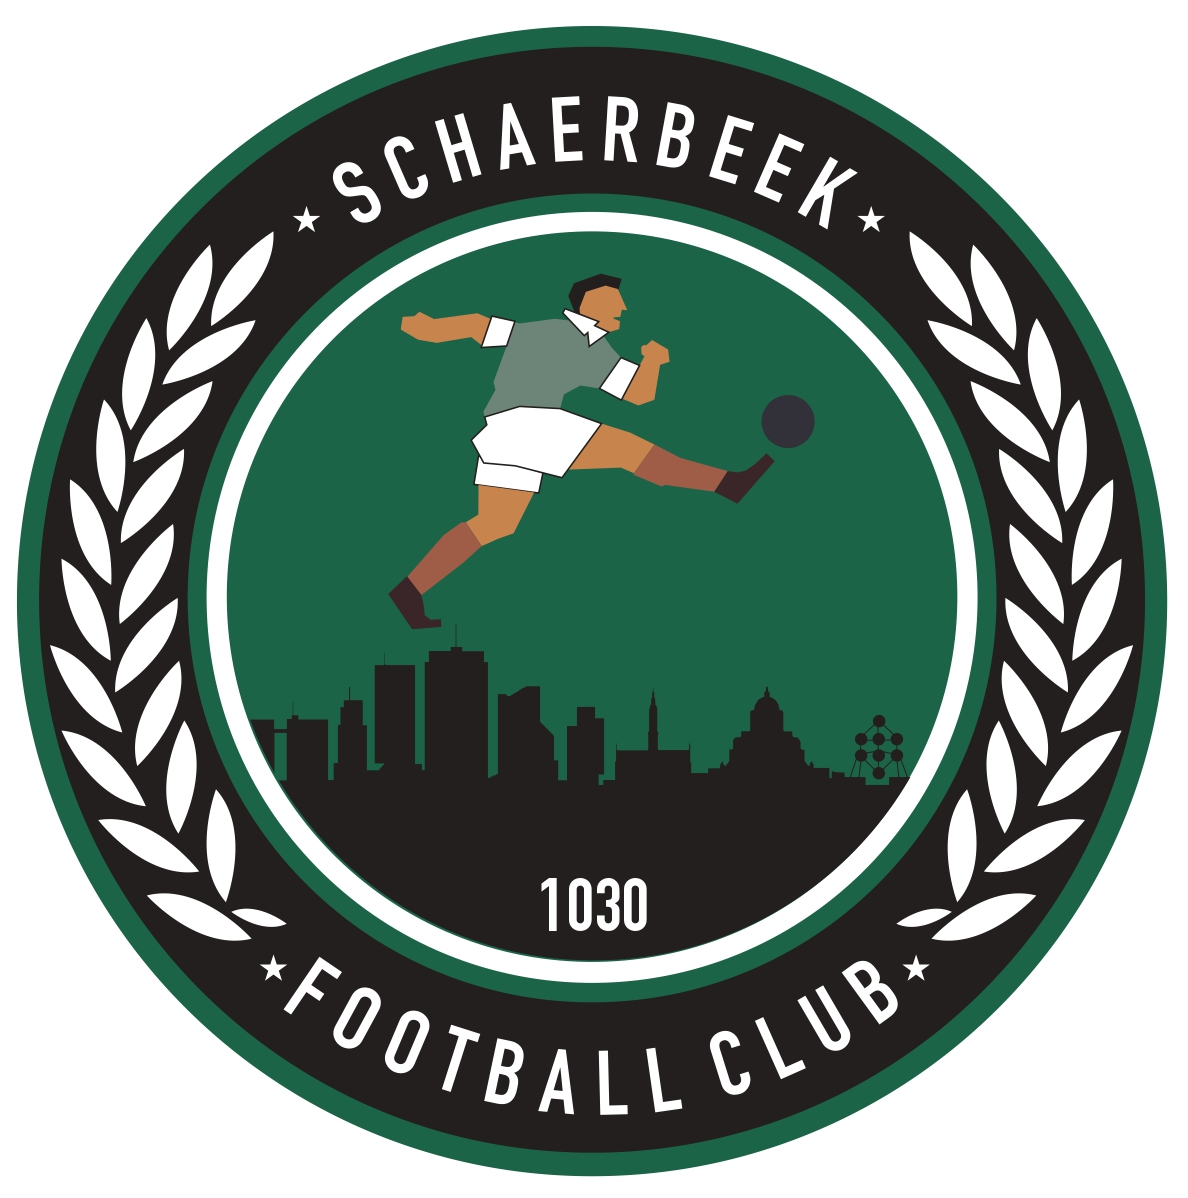 12 - Football Club Schaerbeek A